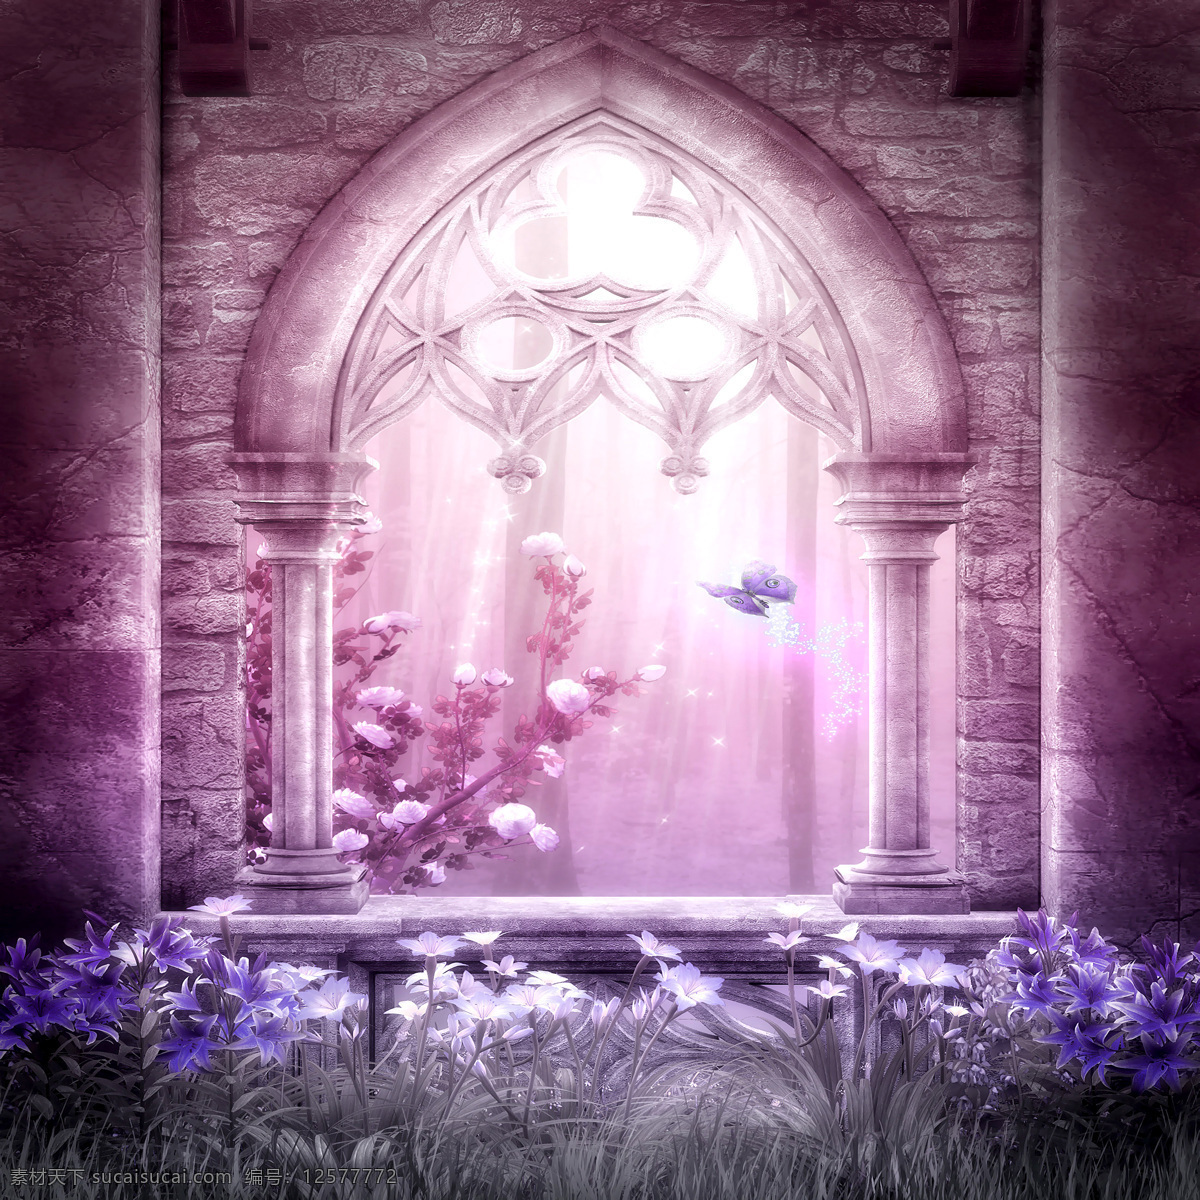 梦幻 欧式 花园 背景 墙 紫色 华丽 欧洲 幻想 背景墙 背景图片 装饰画 免费素材下载